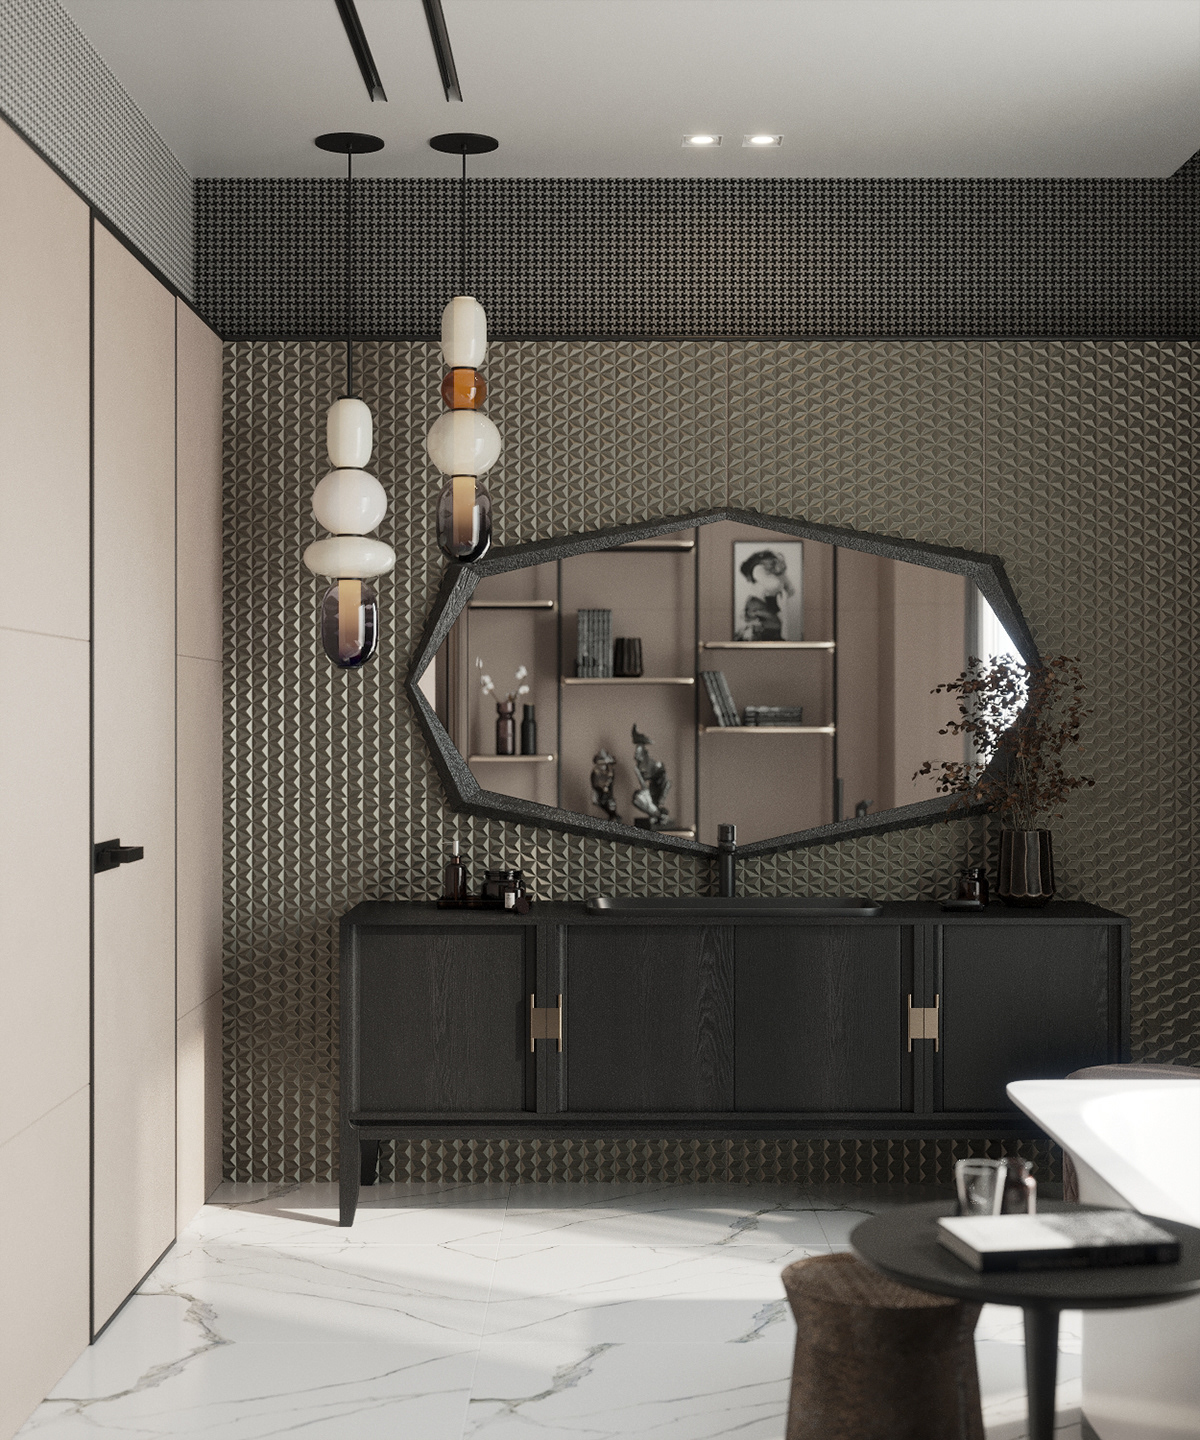 3ds max bathroom design corona Interior visualization